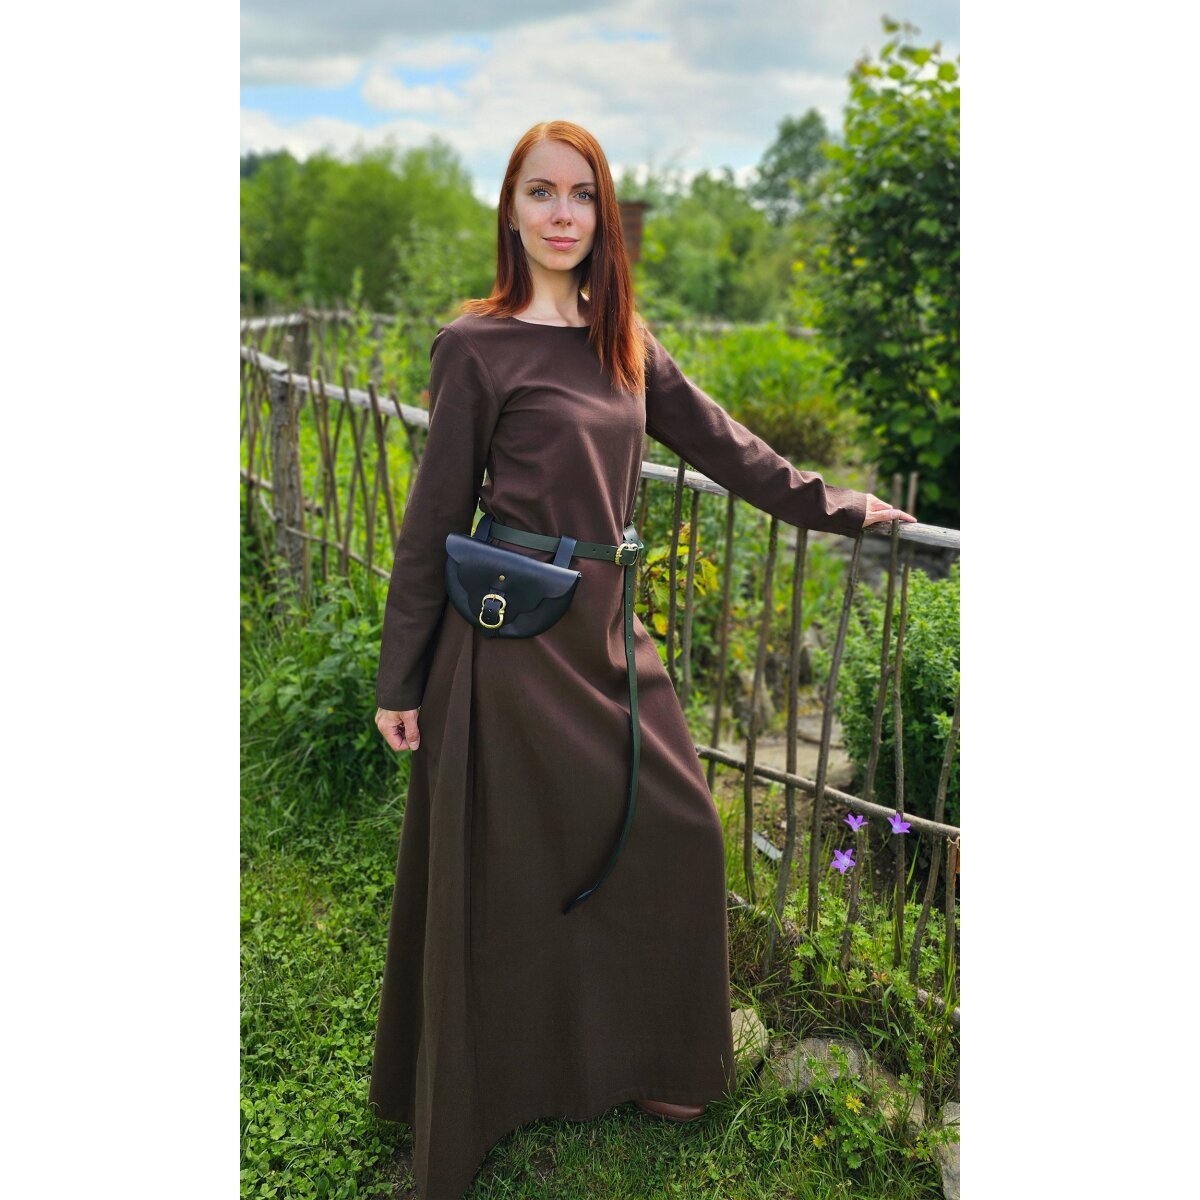 Robe ou sous-robe médiévale classique brune...